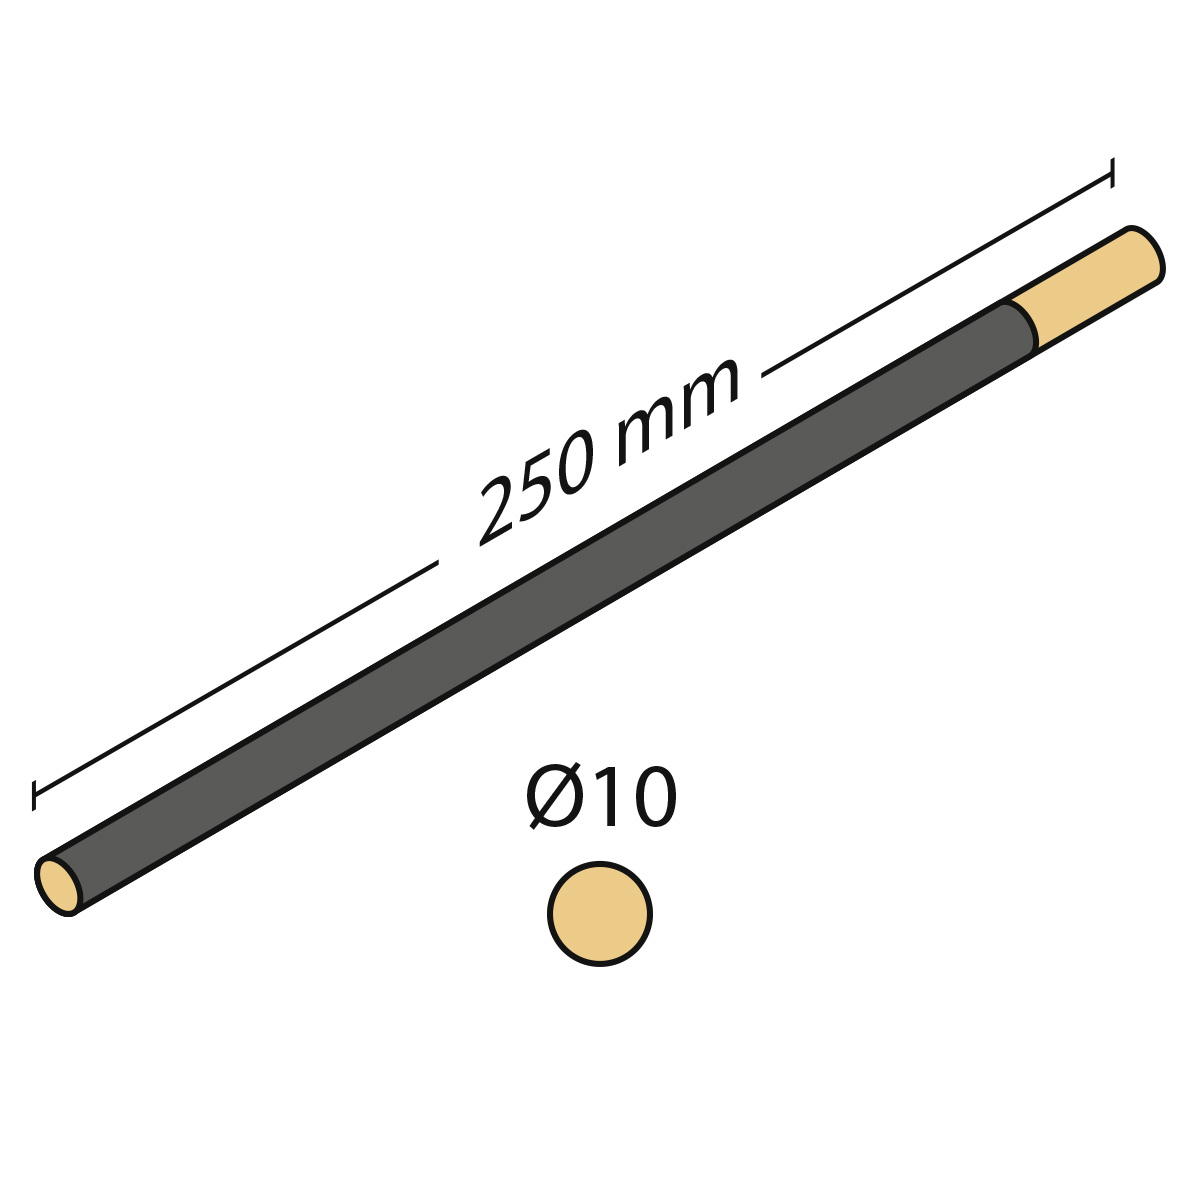 Cabron d'émeri rond, longueur 250 mm, Ø 10 mm, très fin, grain 1000